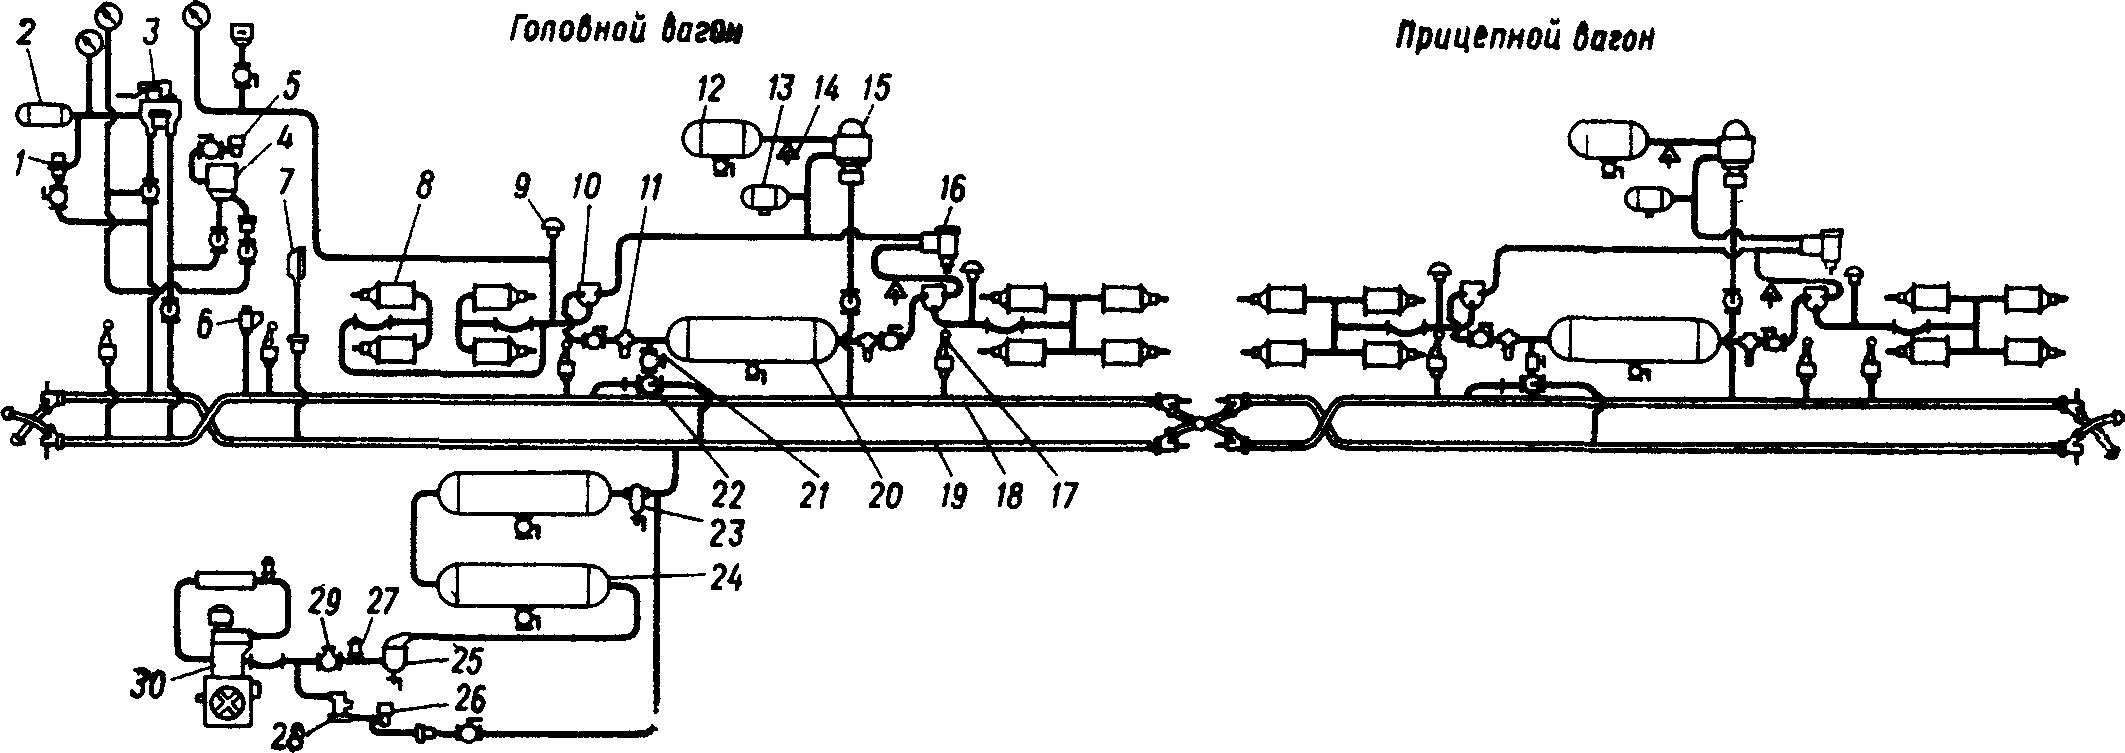 Схема тормозного оборудования дизель-поезда ДР1П